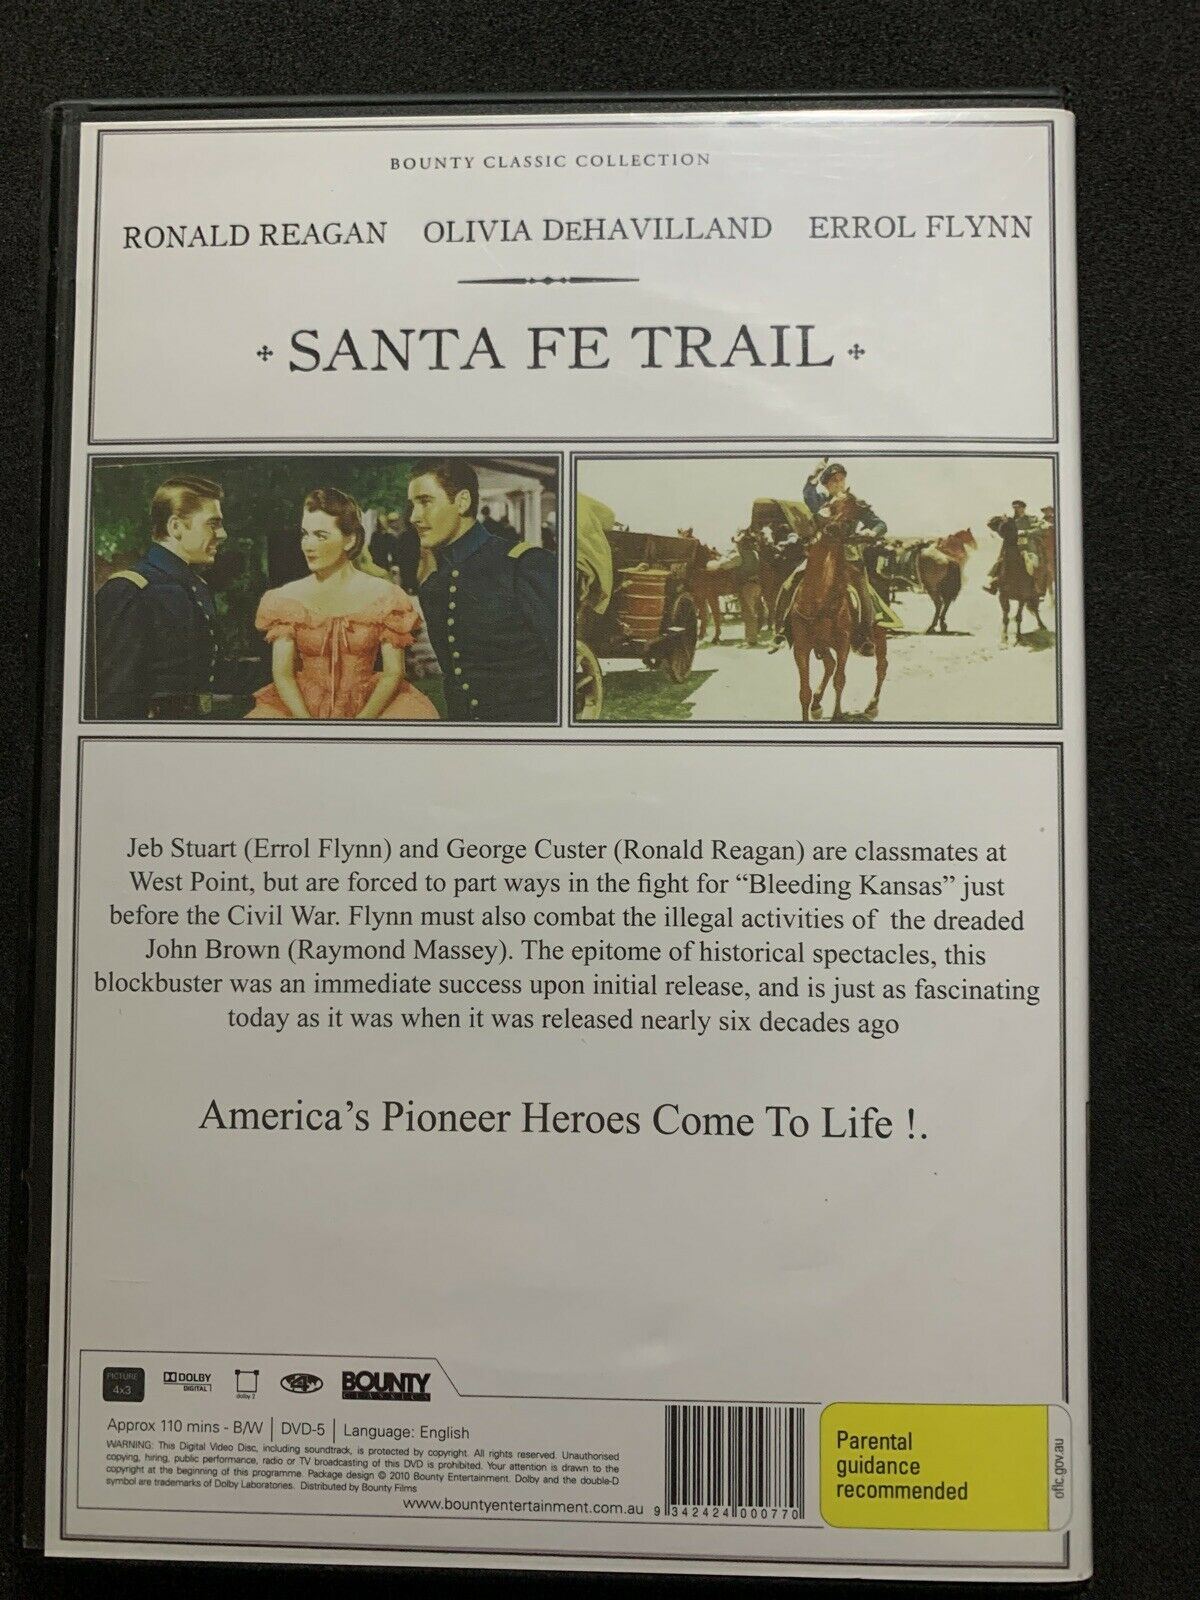 Santa Fe Trail (DVD, 1940) Ronald Reagan, Olivia DeHavilland, Errol Flynn